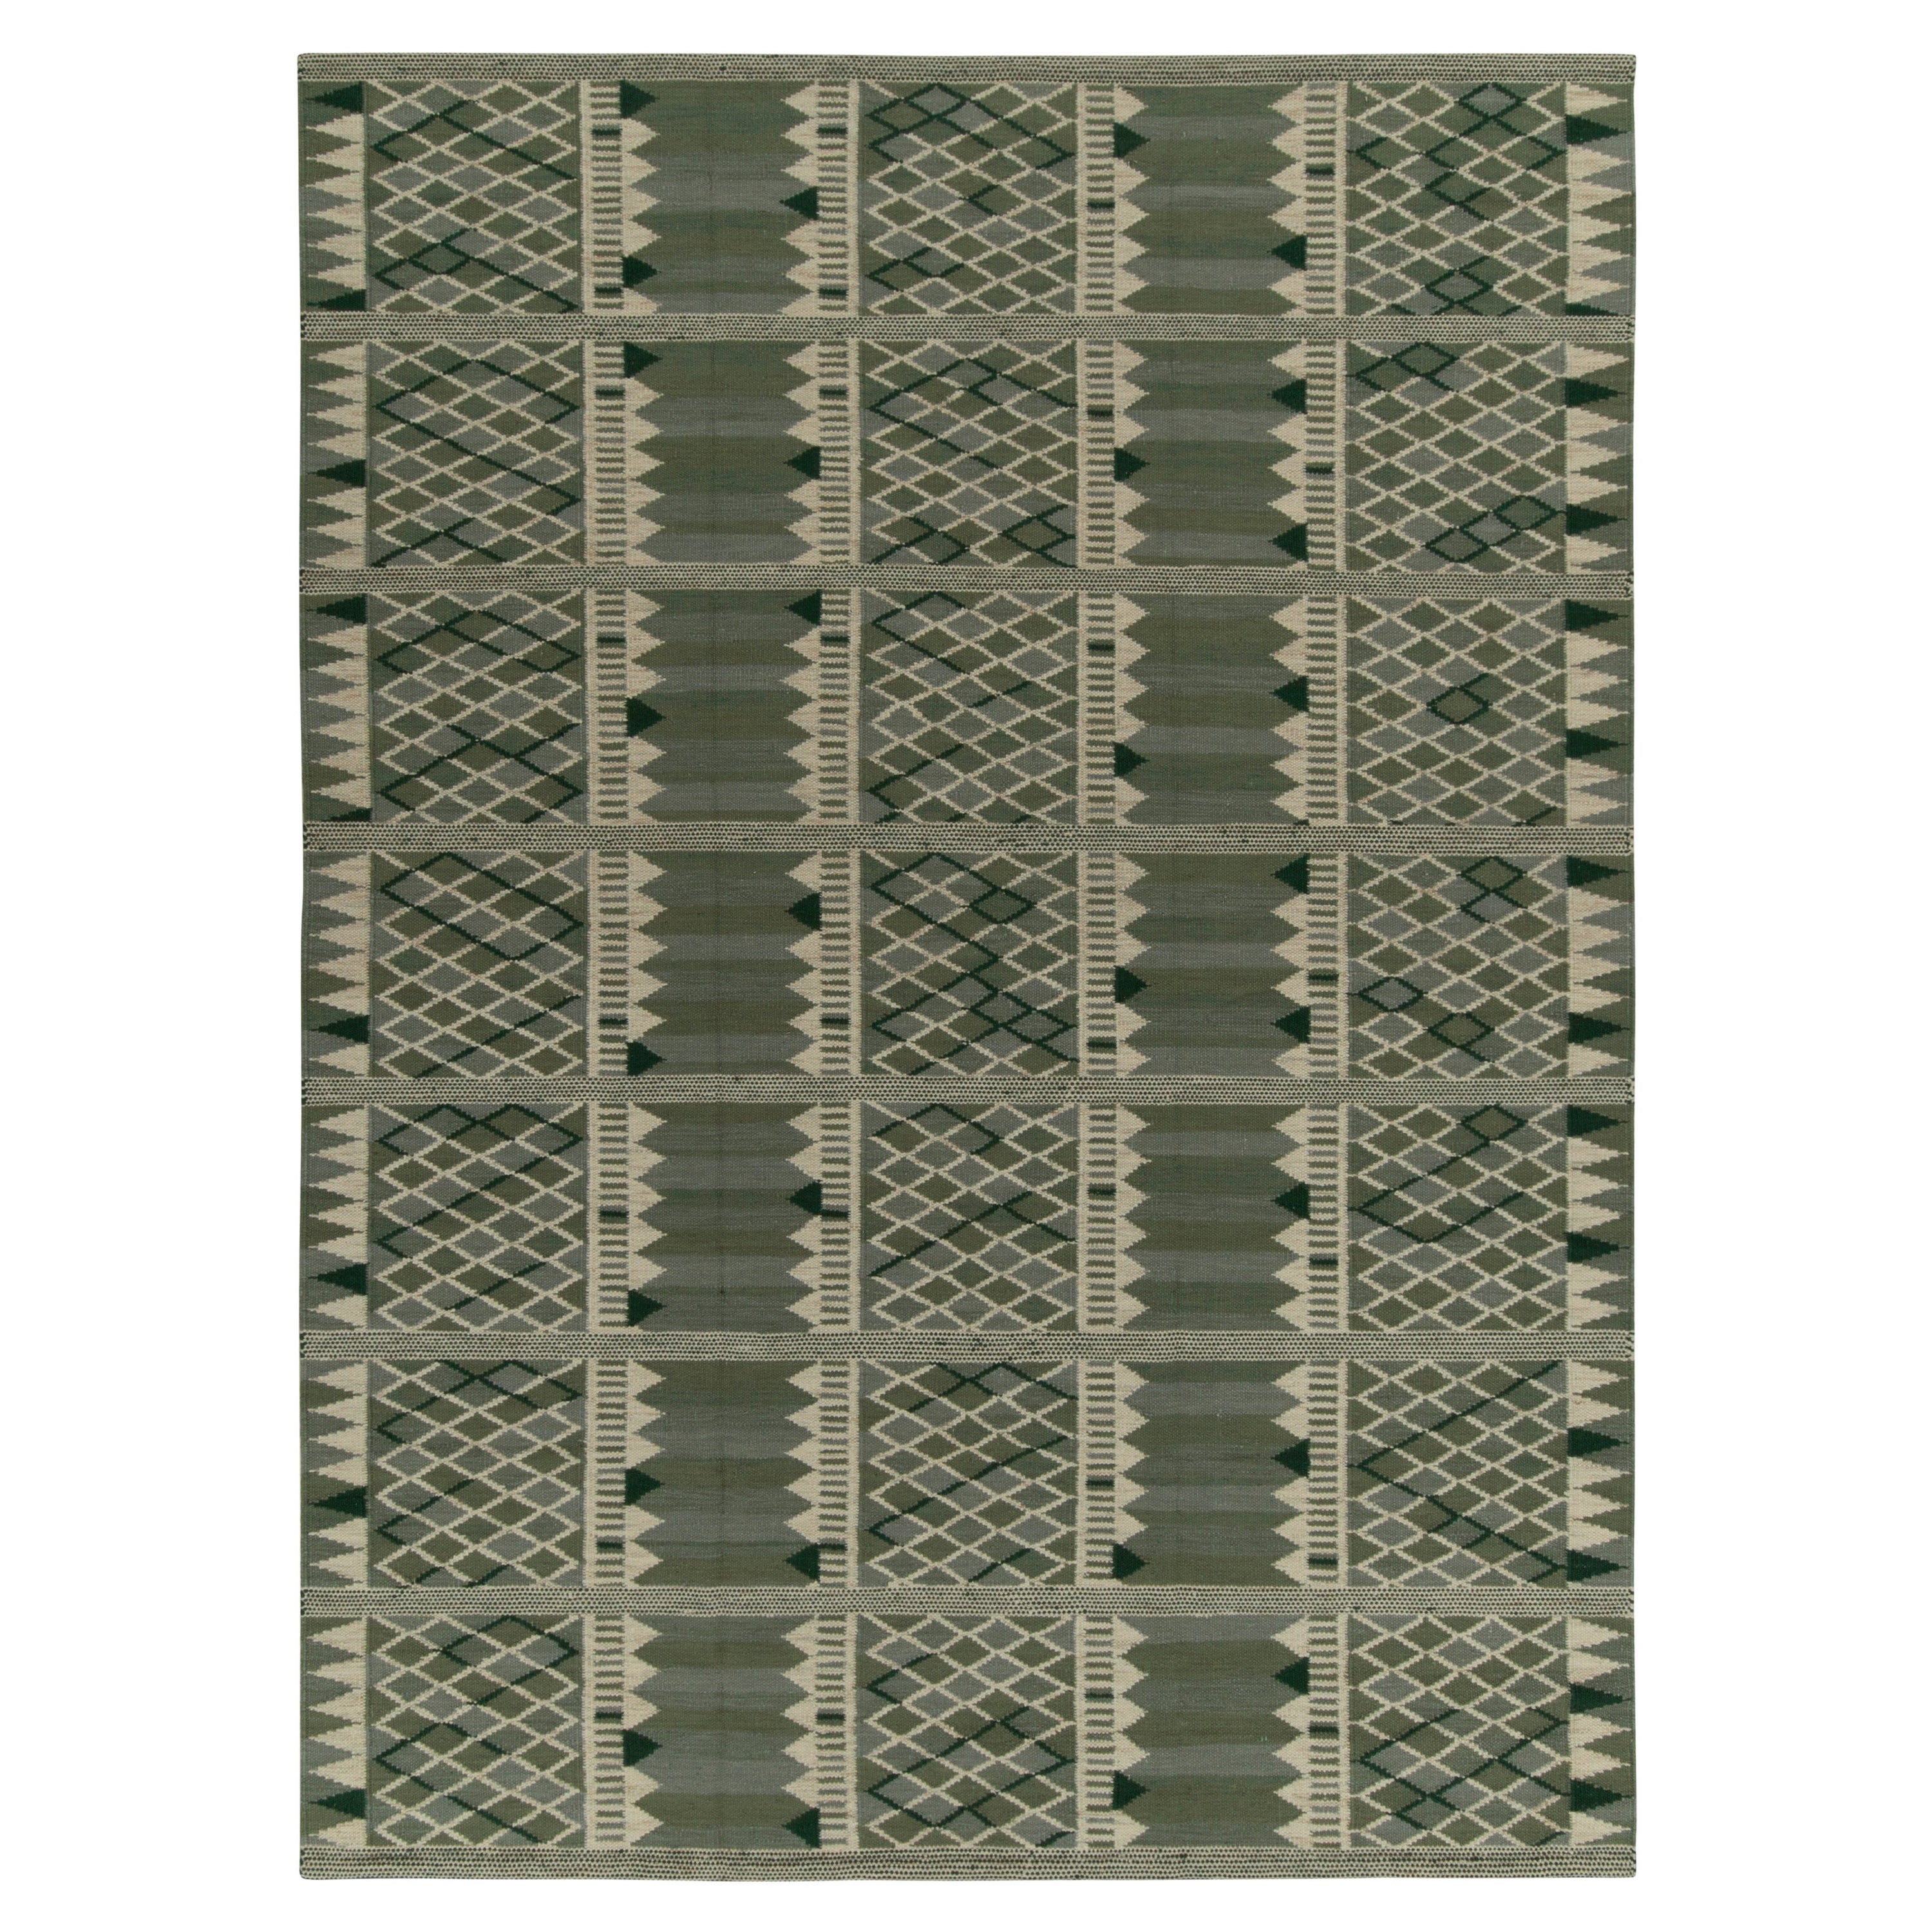 Skandinavischer Kelim von Rug & Kilim in Grün und Weiß mit geometrischem Muster